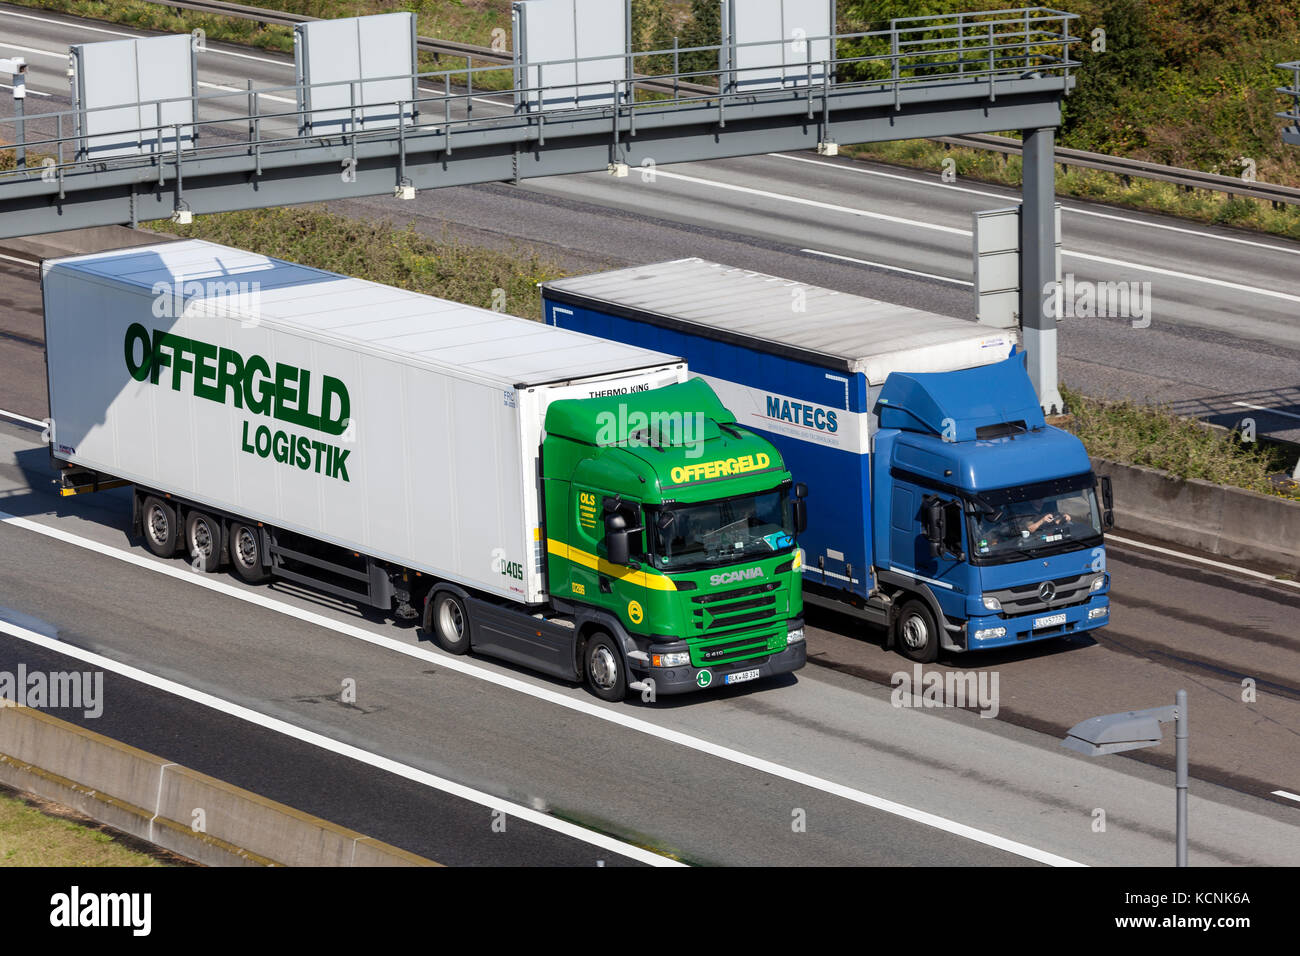 Francfort, Allemagne - Sep 19, 2017 : Scania g410 et Mercedes-Benz atego de camions sur l'autoroute en Allemagne Banque D'Images